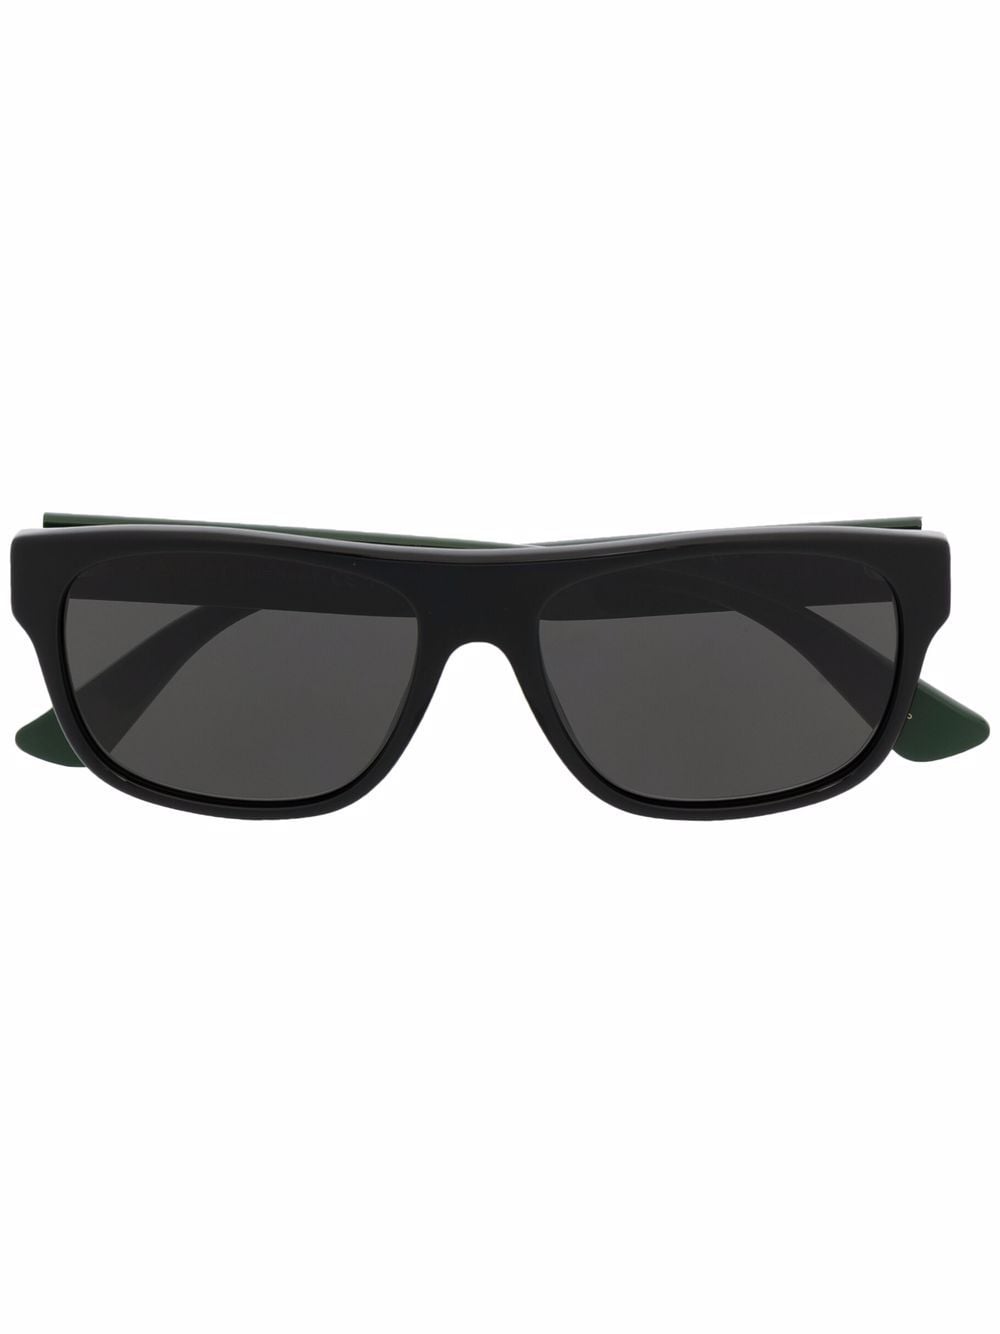 Gucci Eyewear Rectangular Frame Sunglasses - Farfetch